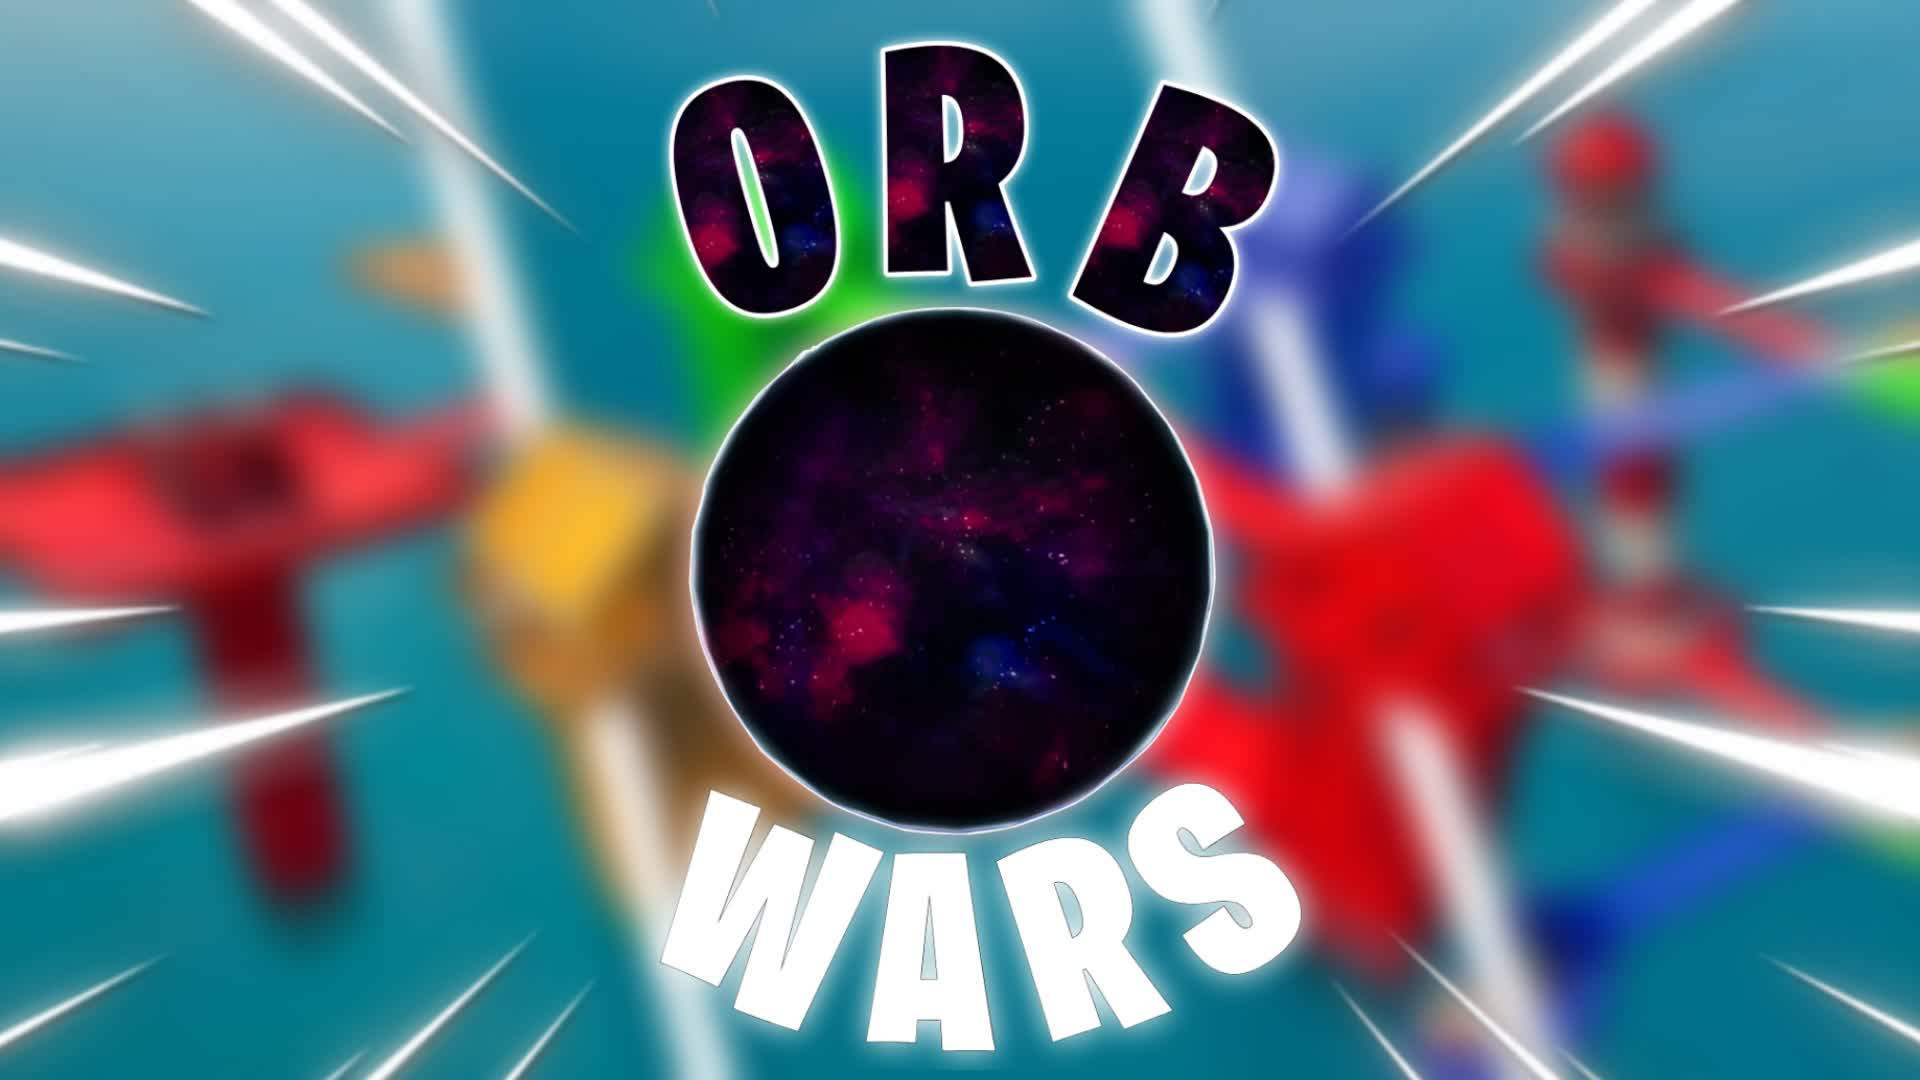 ORB WARS 🛡️TOWER BATTLE 🗡️